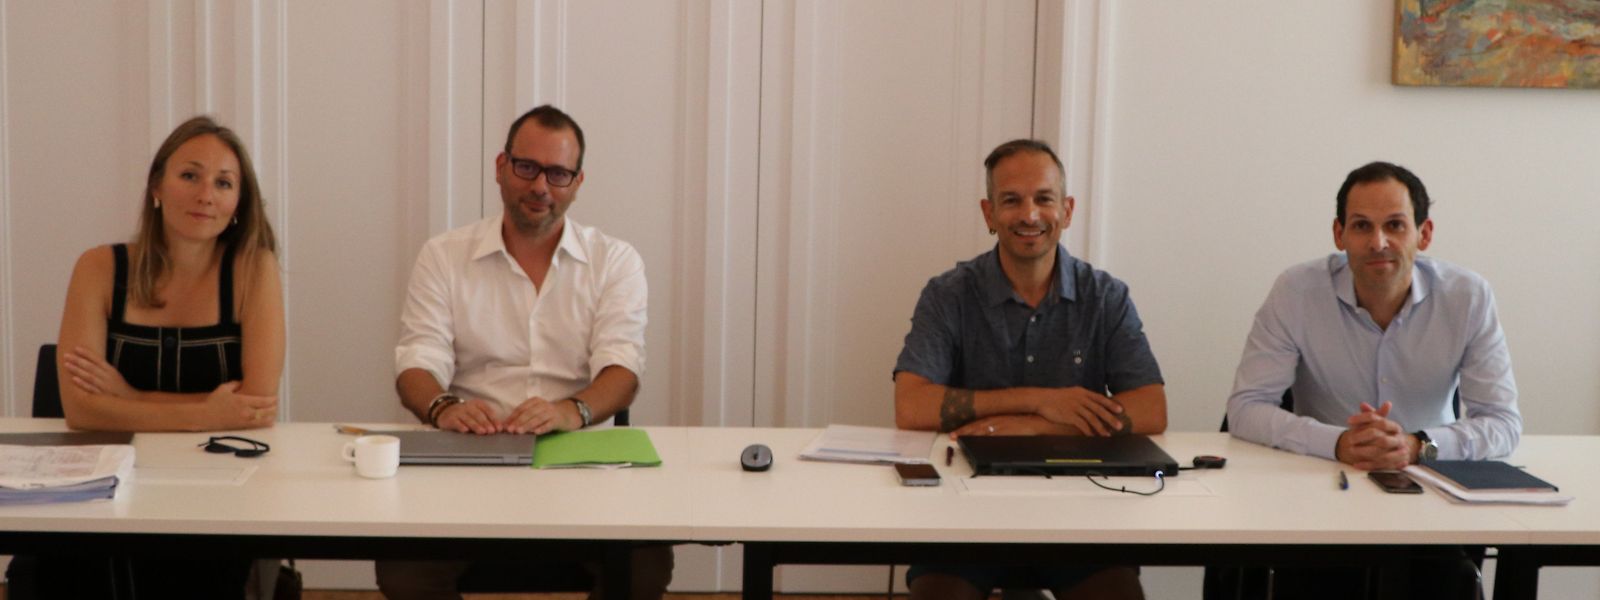 Bürgermeister Dan Biancalana, Schöffe Loris Spina (beide LSAP) und Raphaël Kies sowie Ehaterine Churkova (beide uni.lu) stellten das Projekt vor. (v.r.n.l.)